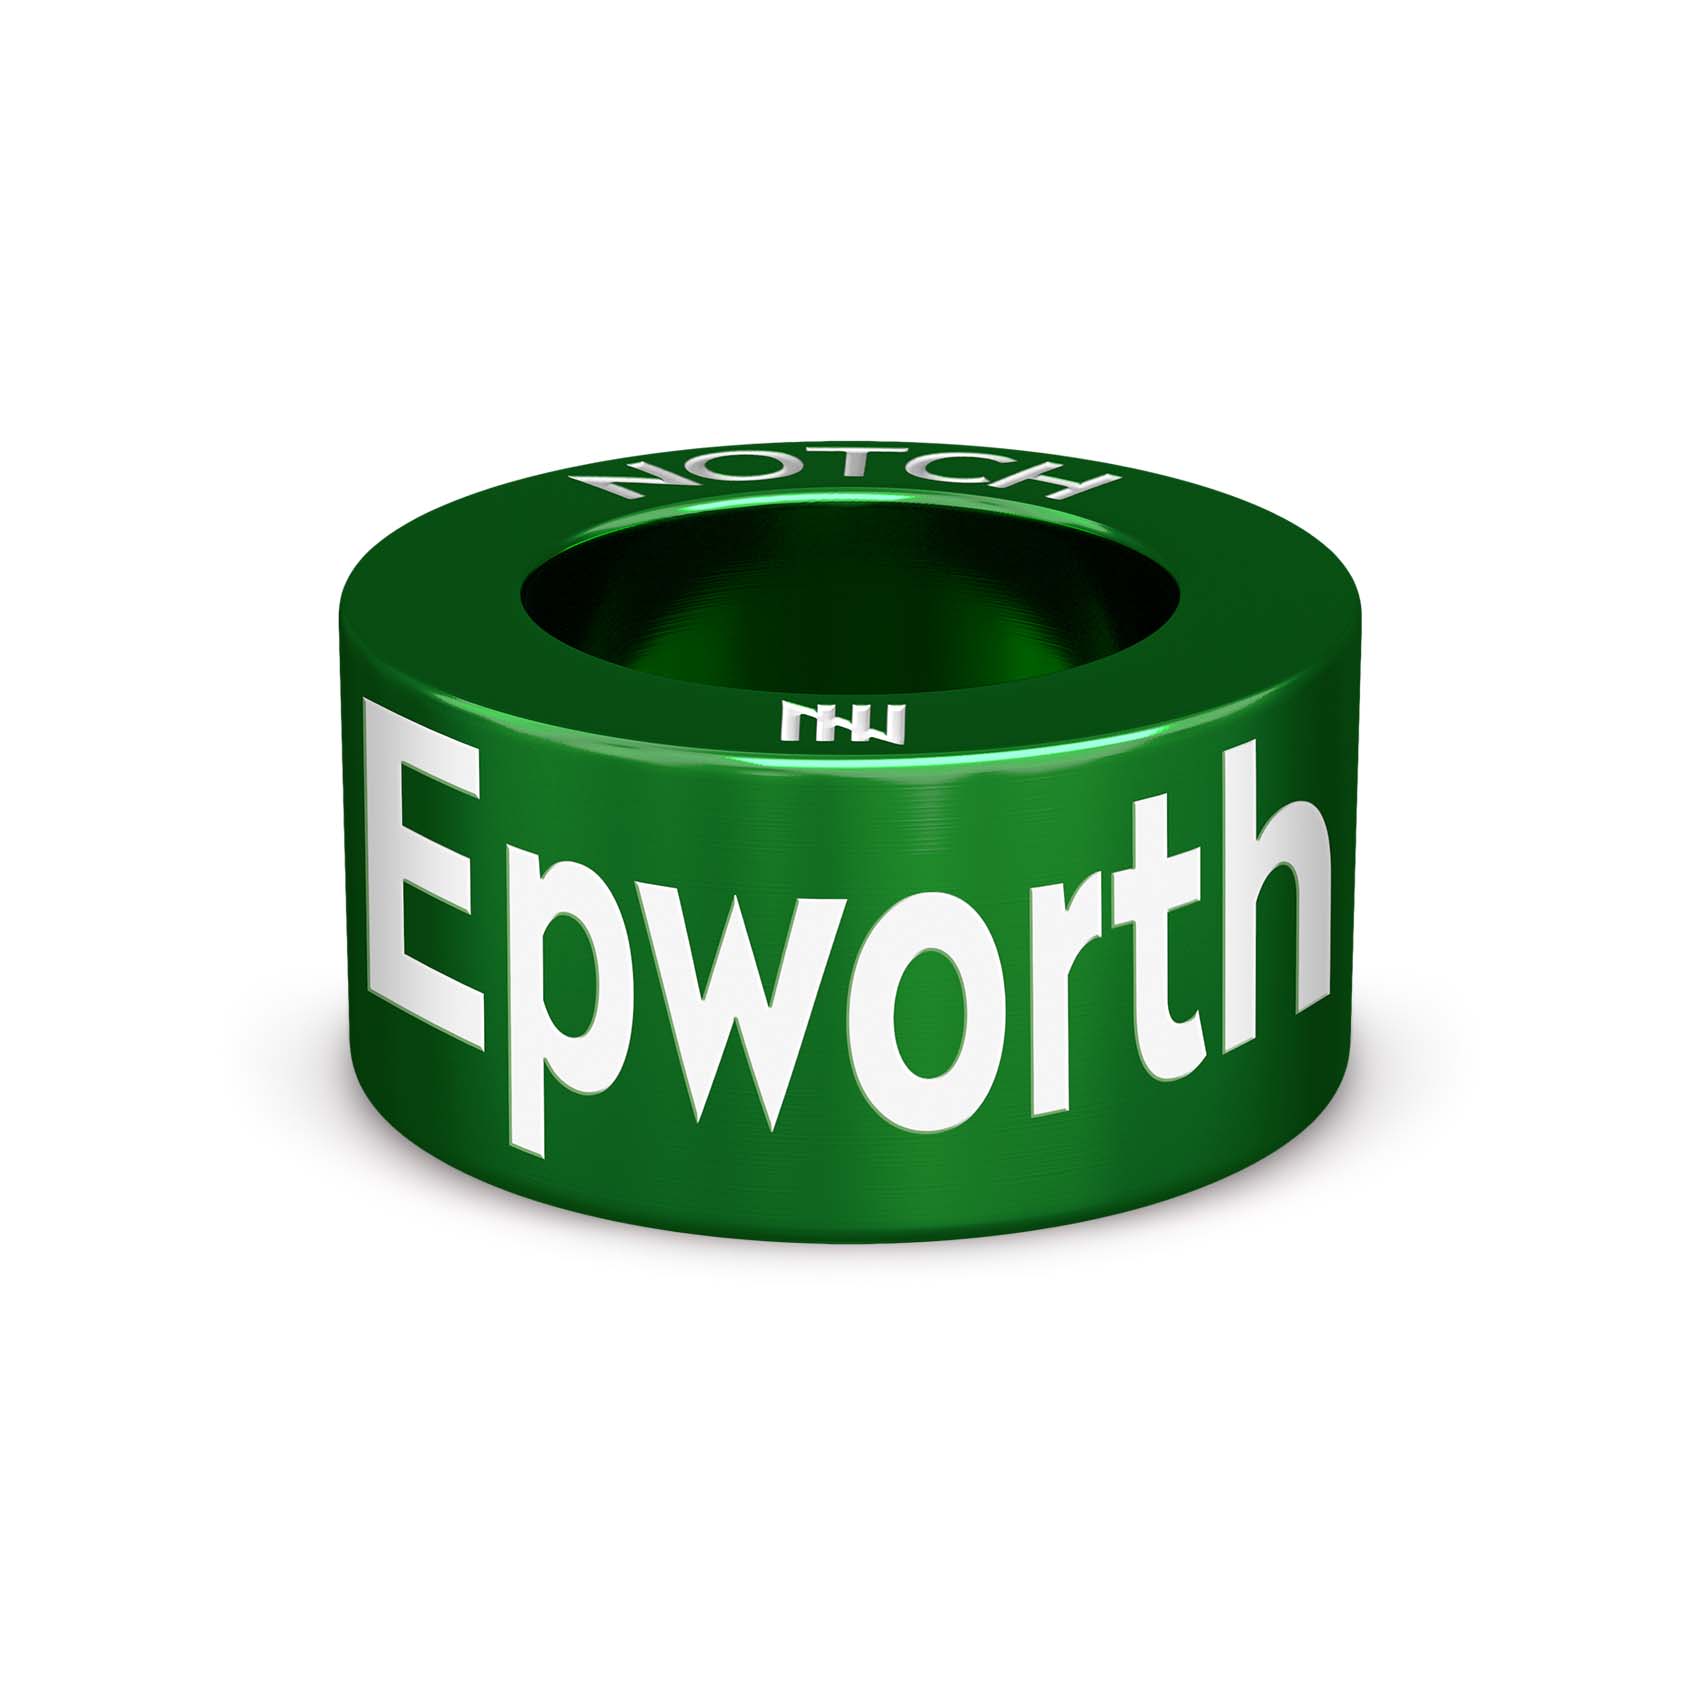 Epworth Triathlon NOTCH Charm